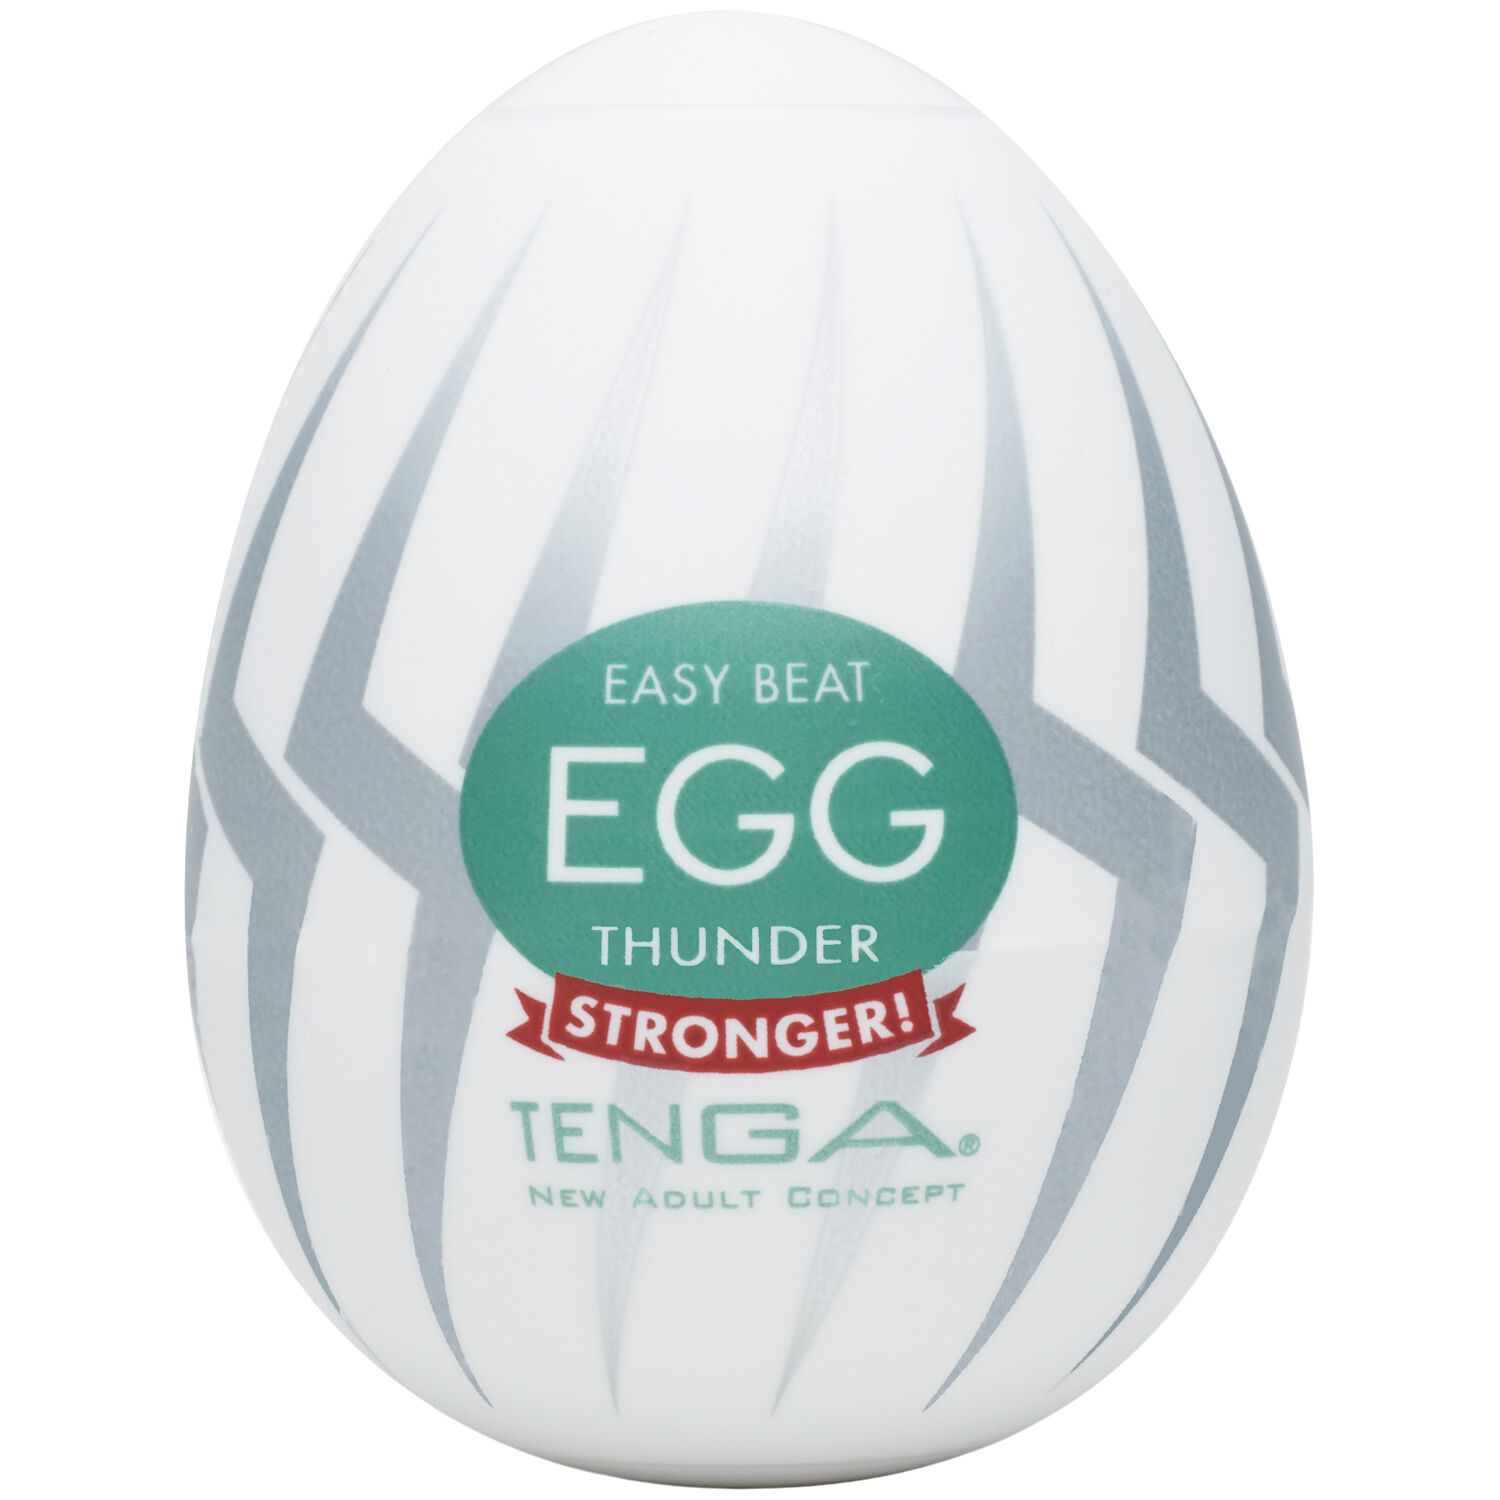 Tenga Egg Thunder Onani Håndjobb til Menn